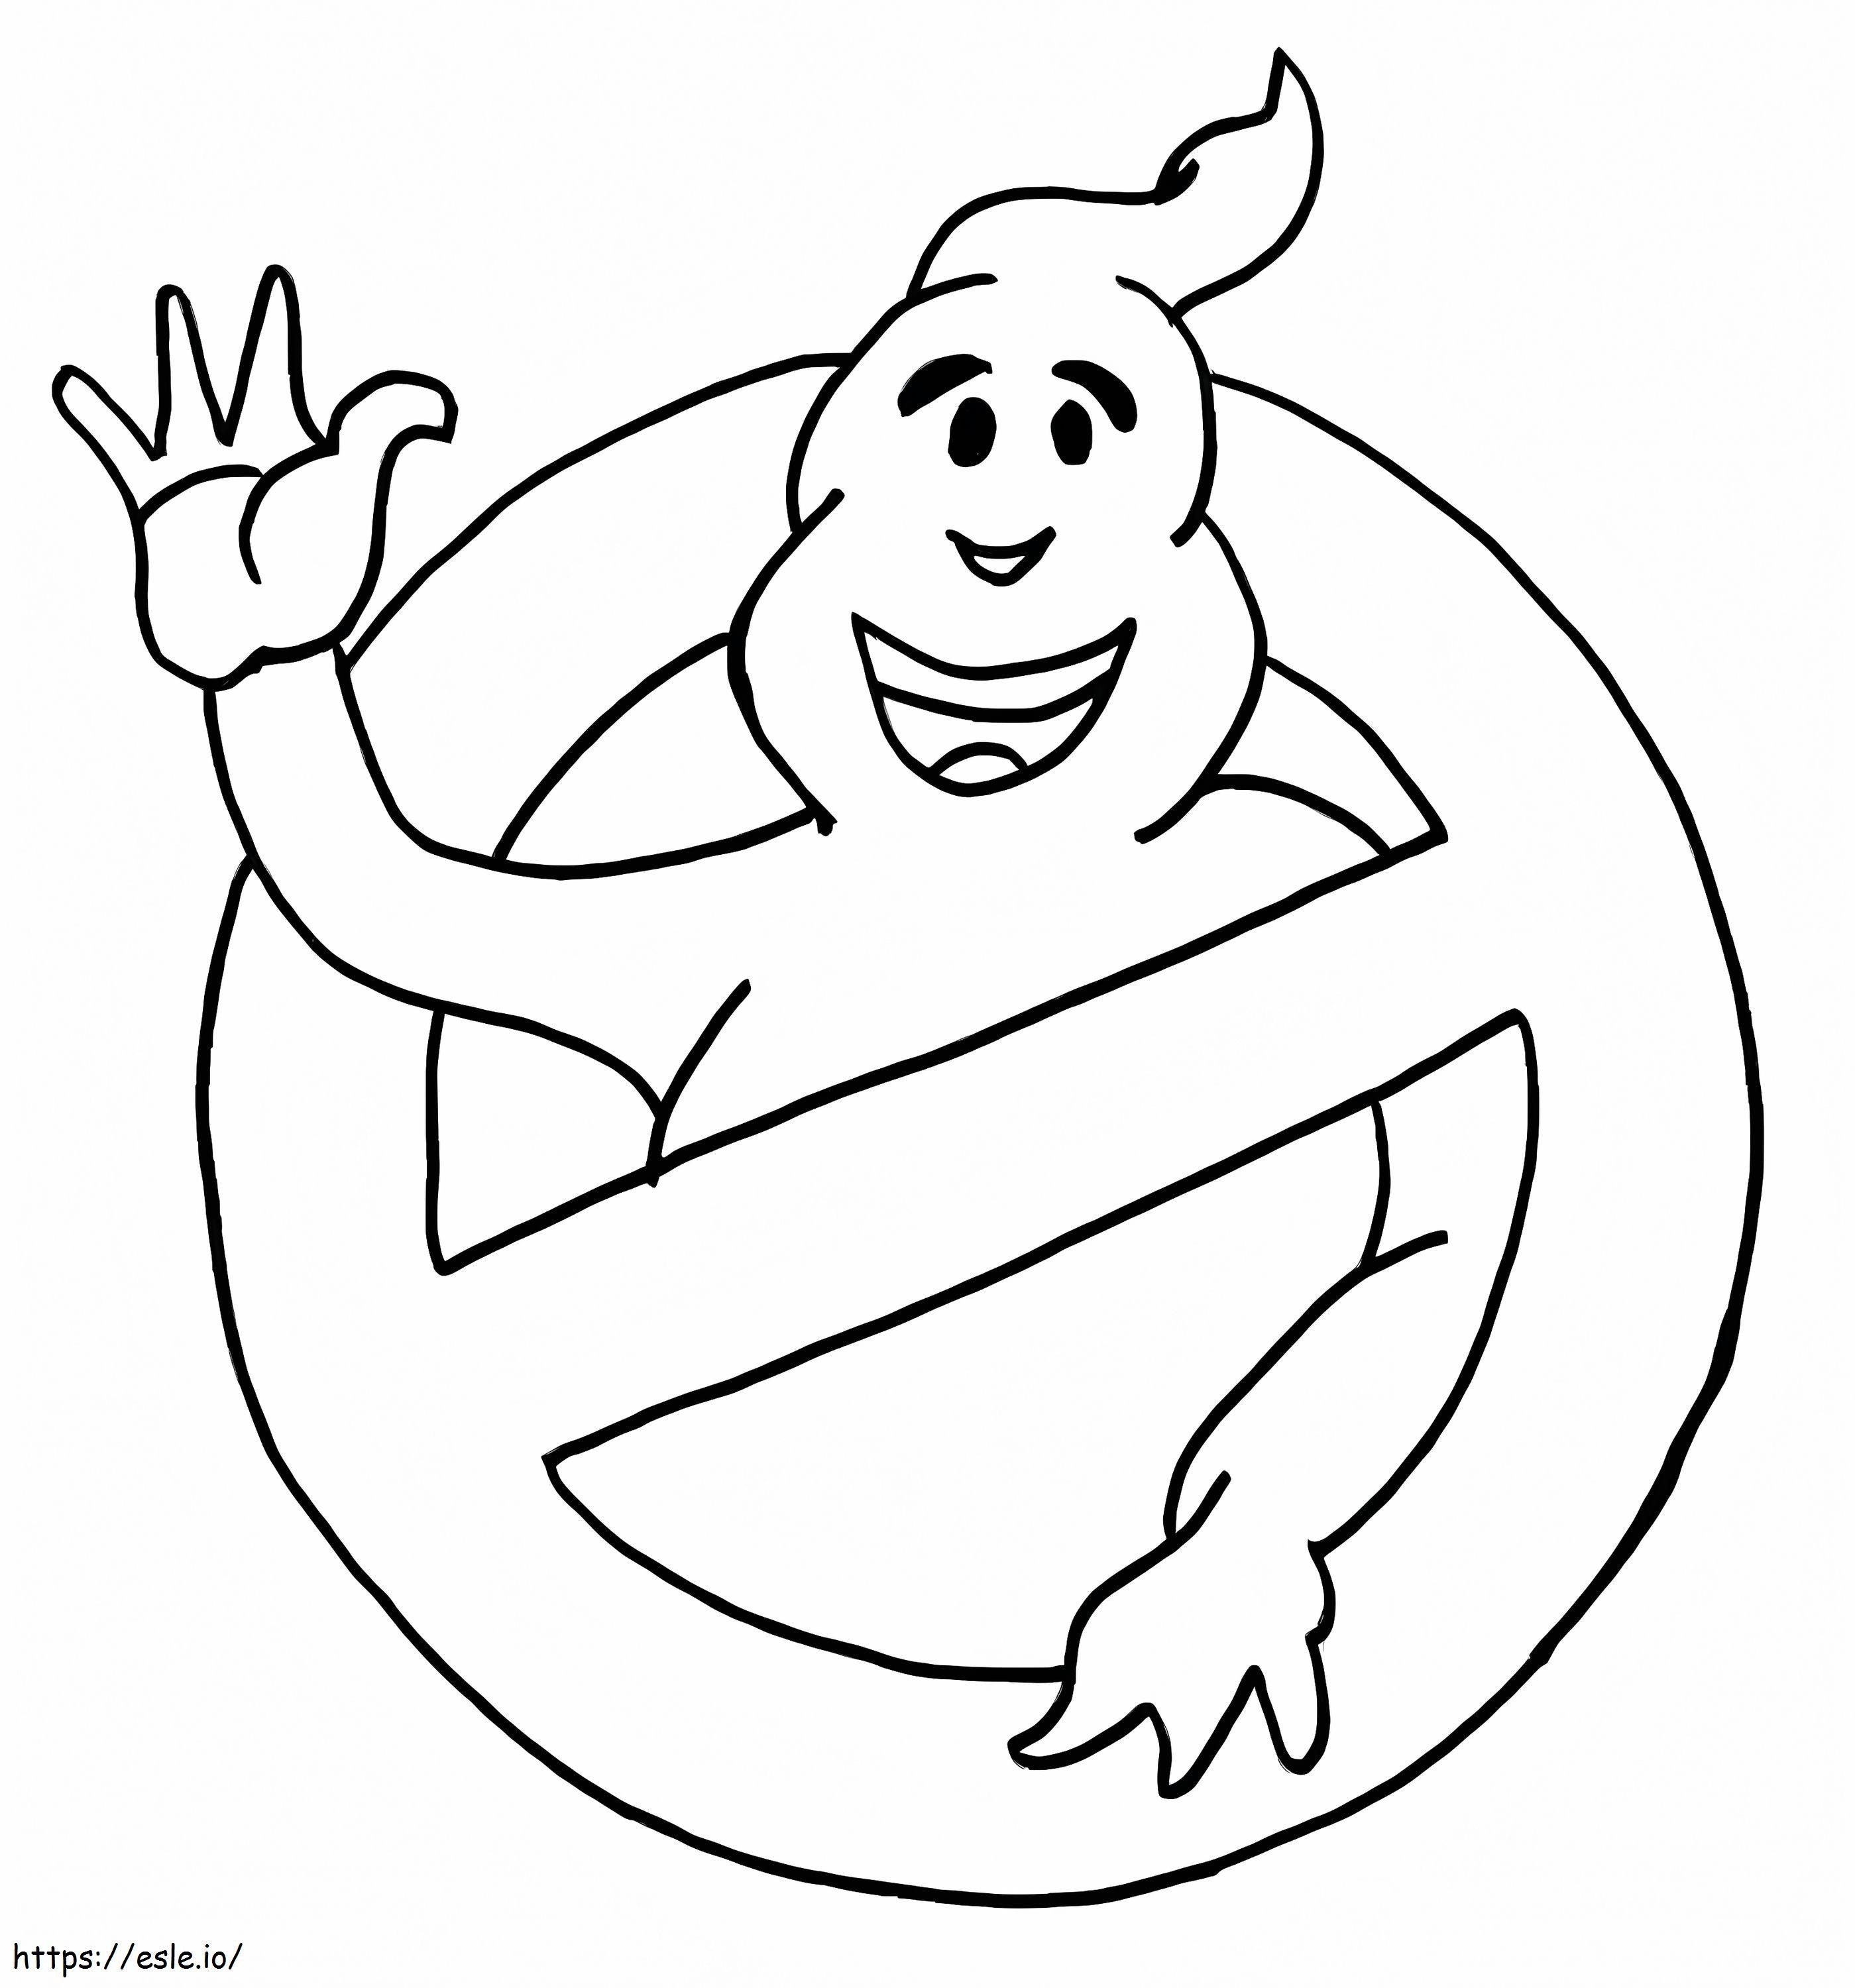 Grappig Ghostbusters-logo kleurplaat kleurplaat